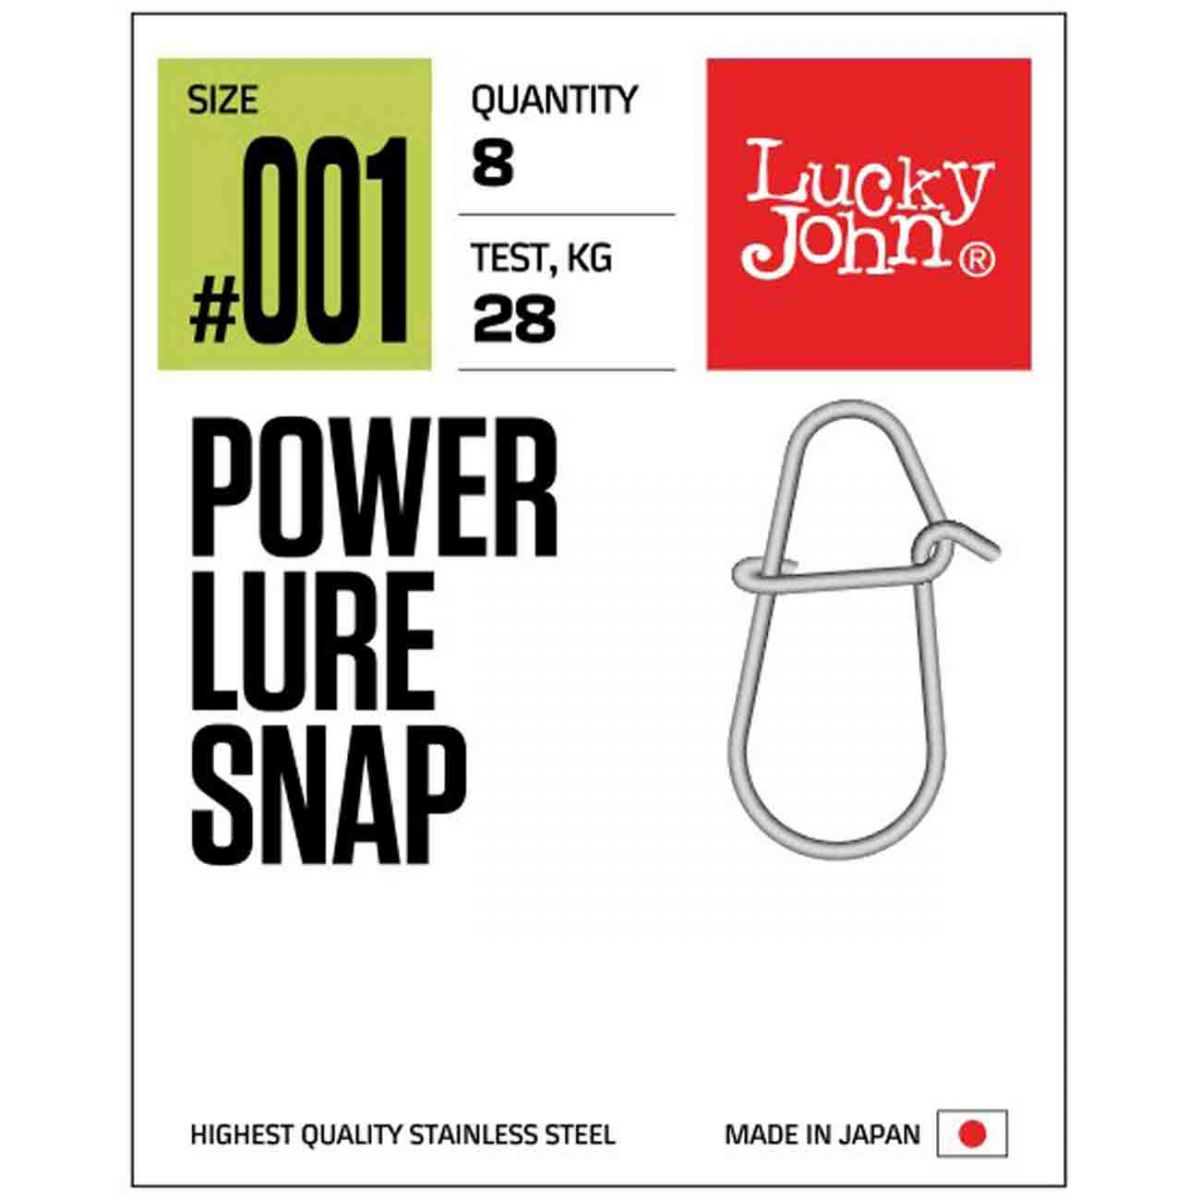 Lucky John 5126 Power Lure Snap Son derece yükdek çekim gücüne sahip üst 